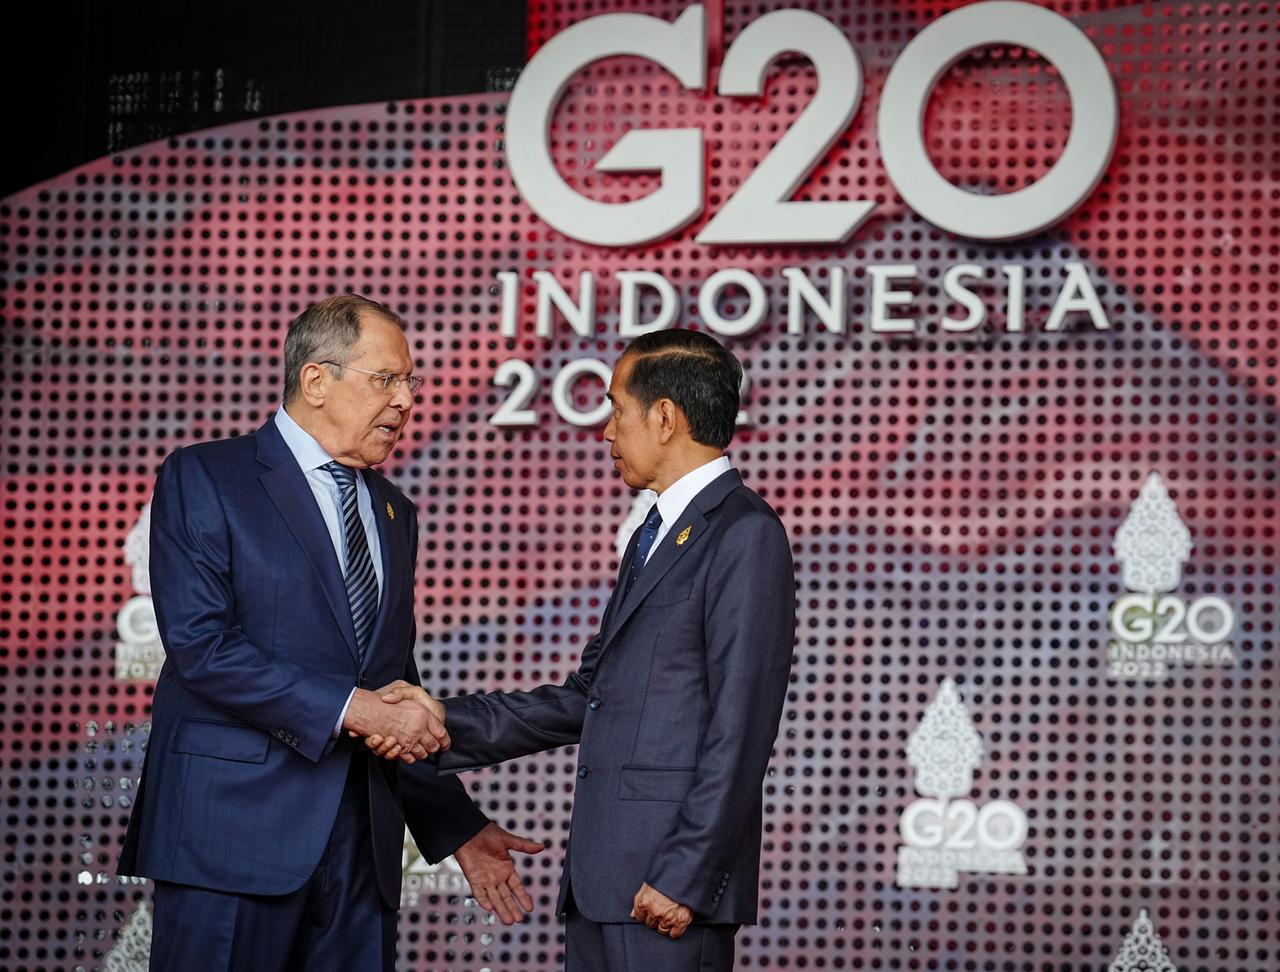 Sergej Lawrow, Außenminister von Russland, wird von Joko Widodo, Präsident von Indonesien, beim G20-Gipfel empfangen. Die Gruppe der G20, der stärksten Industrienationen und aufstrebenden Volkswirtschaften, kommt für zwei Tage auf der indonesischen Insel Bali zusammen.